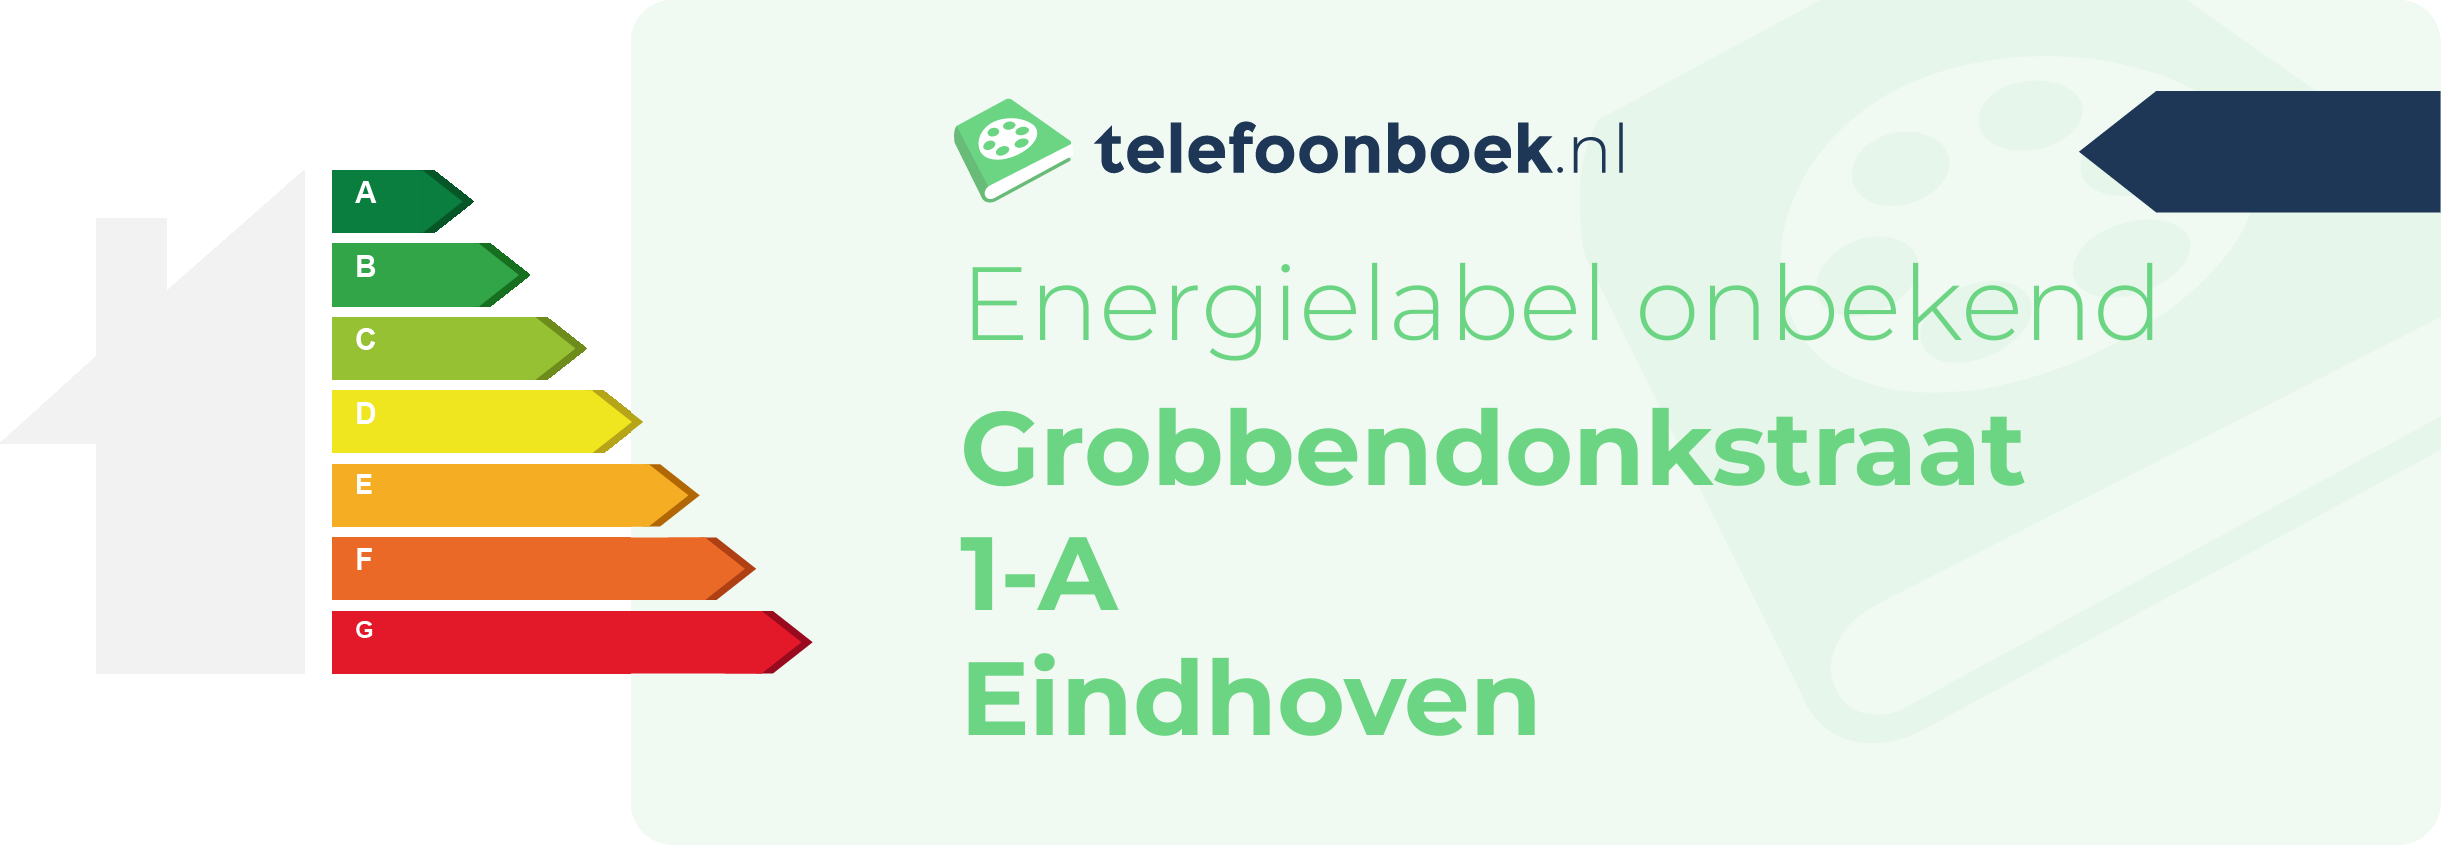 Energielabel Grobbendonkstraat 1-A Eindhoven